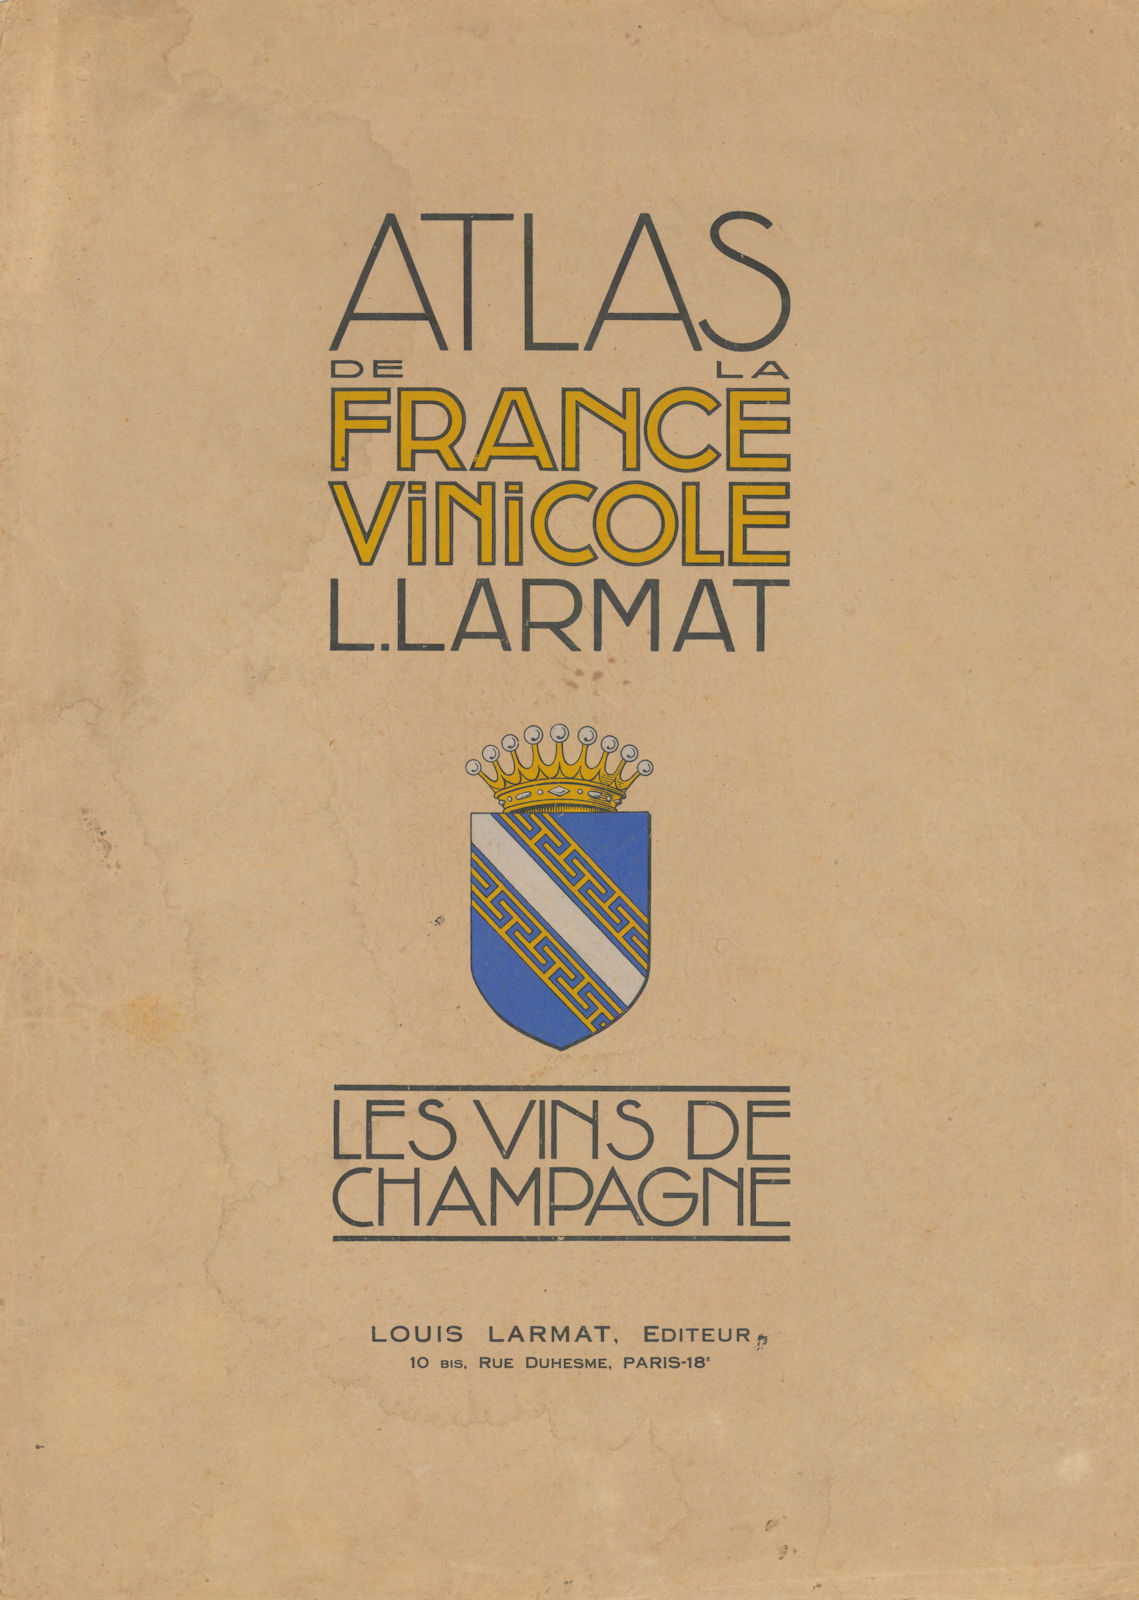 Louis Larmat. Atlas de la France Vinicole cover. Champagne (2) 1944 old print